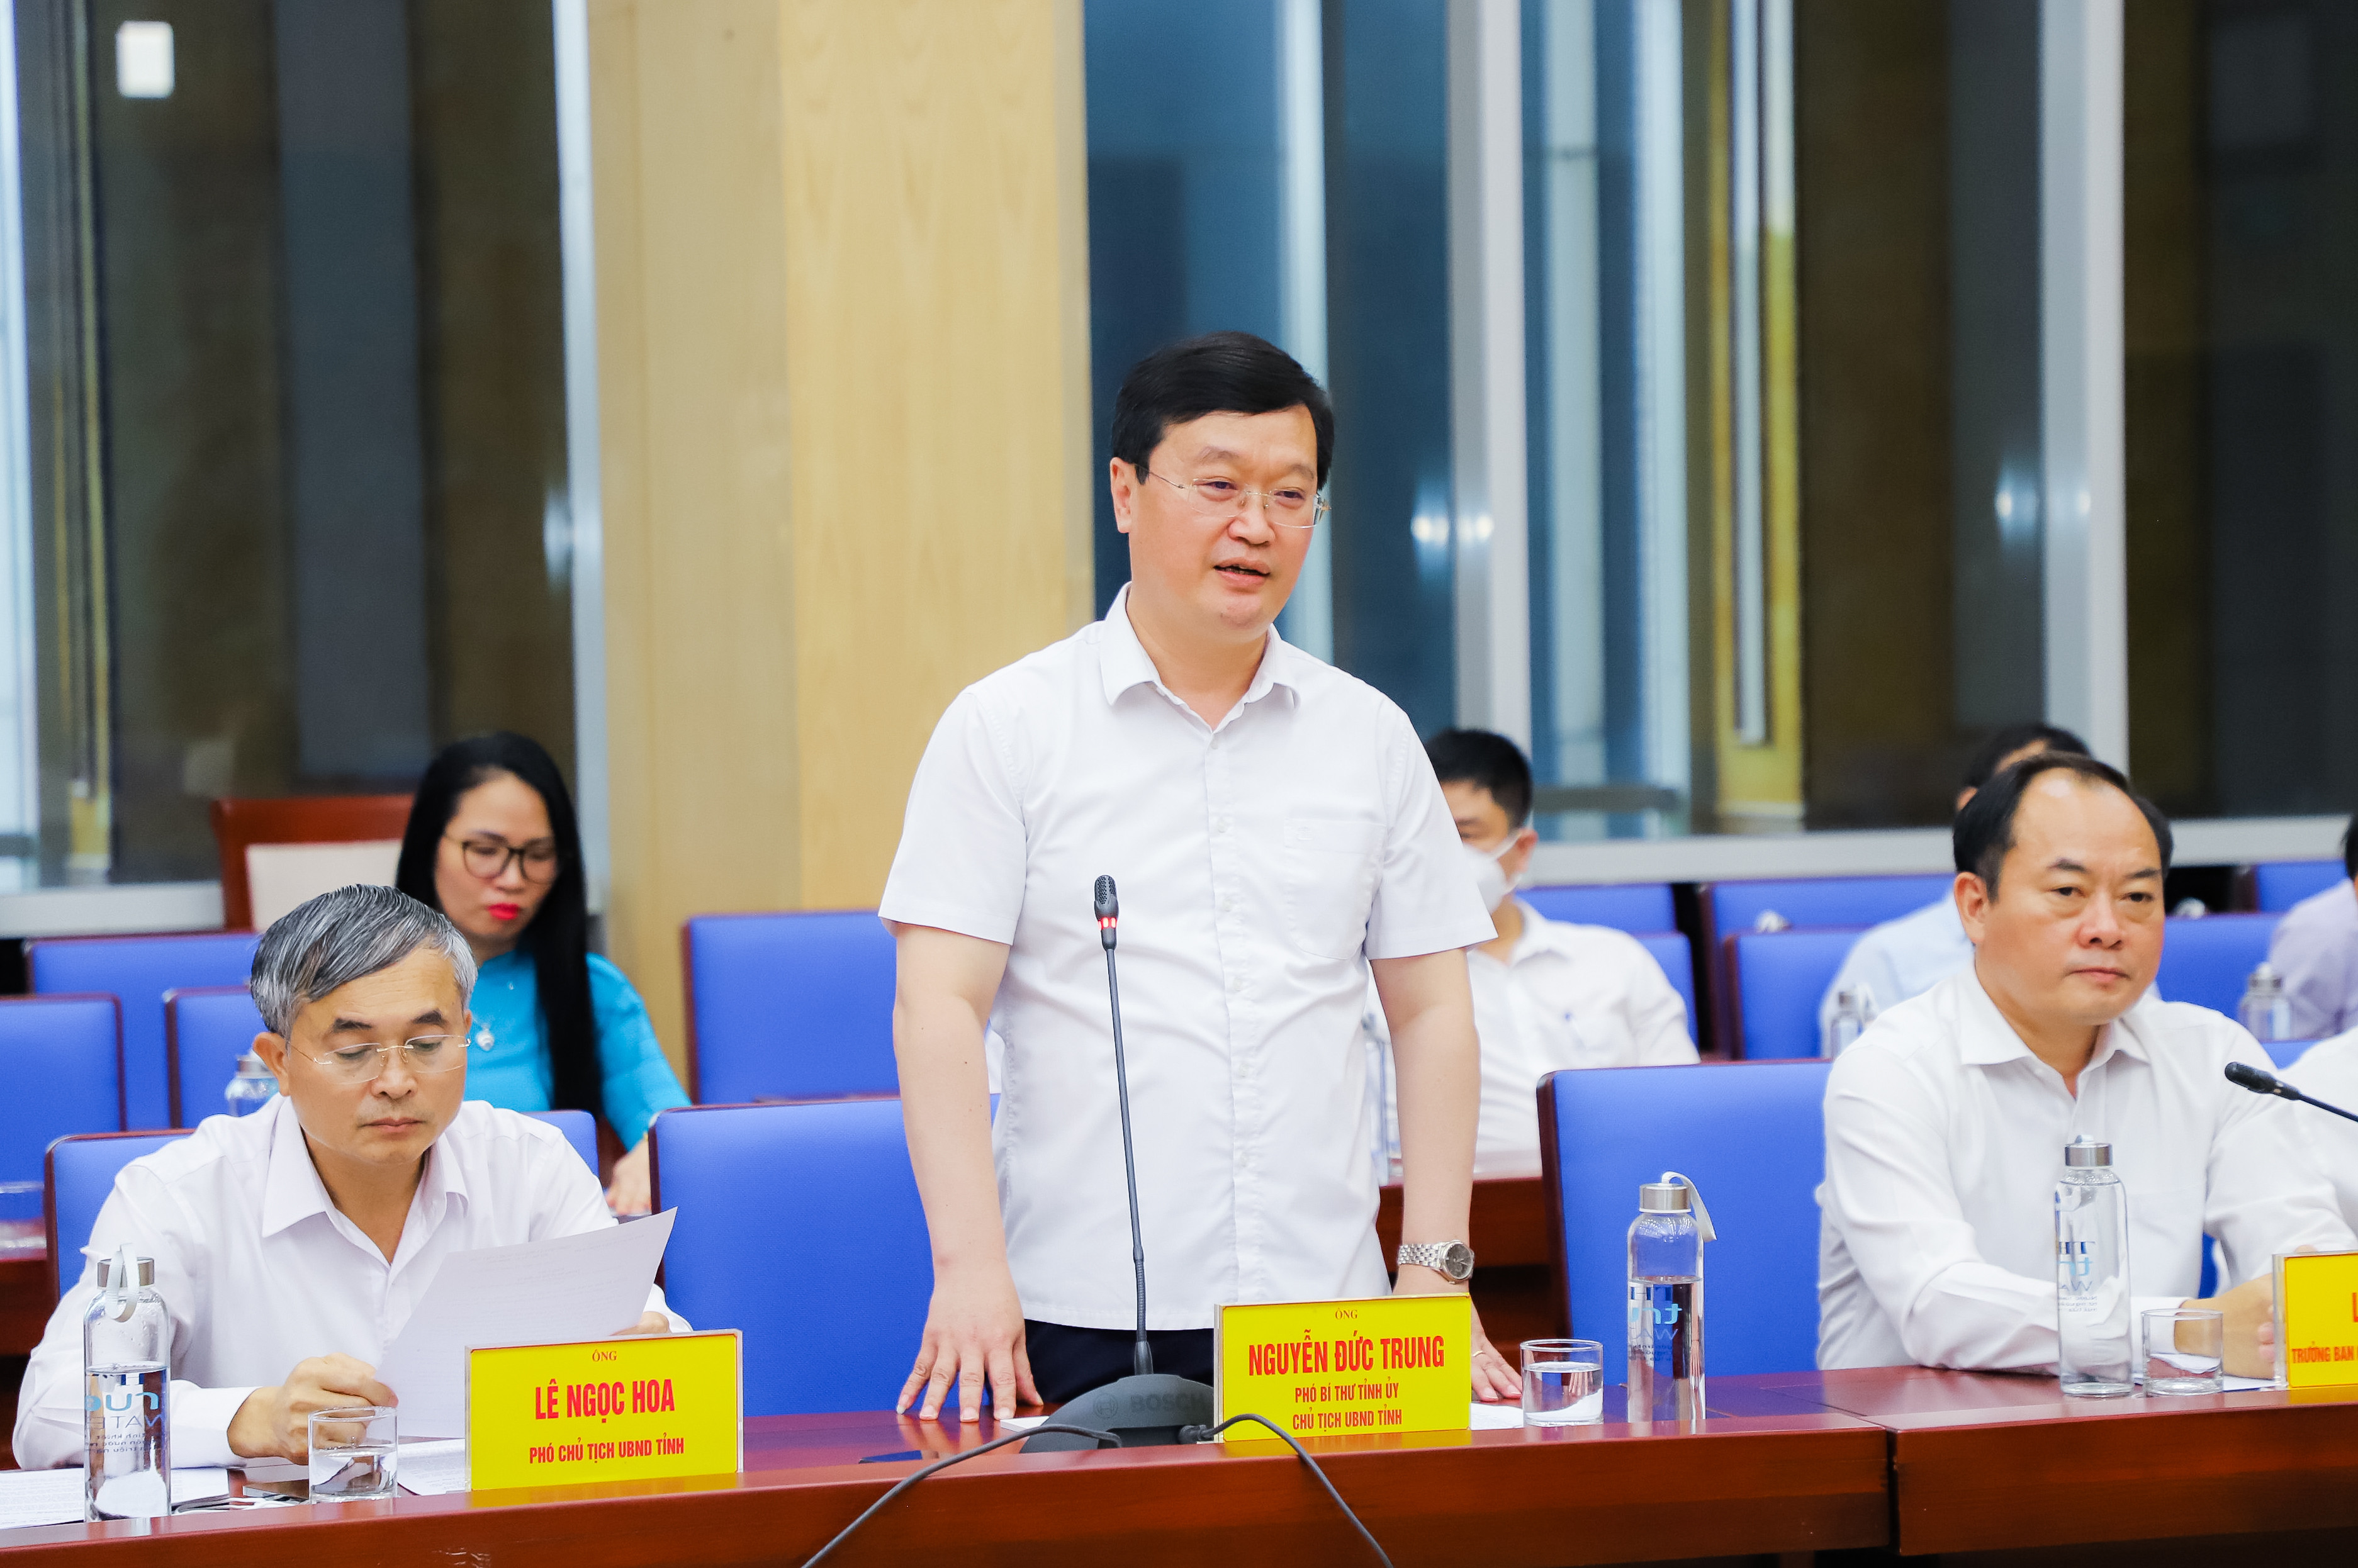 Đồng chí Nguyễn Đức Trung - Chủ tịch UBND tỉnh Nghệ An phát biểu tại buổi lễ. Ảnh: Phạm BằngBằng